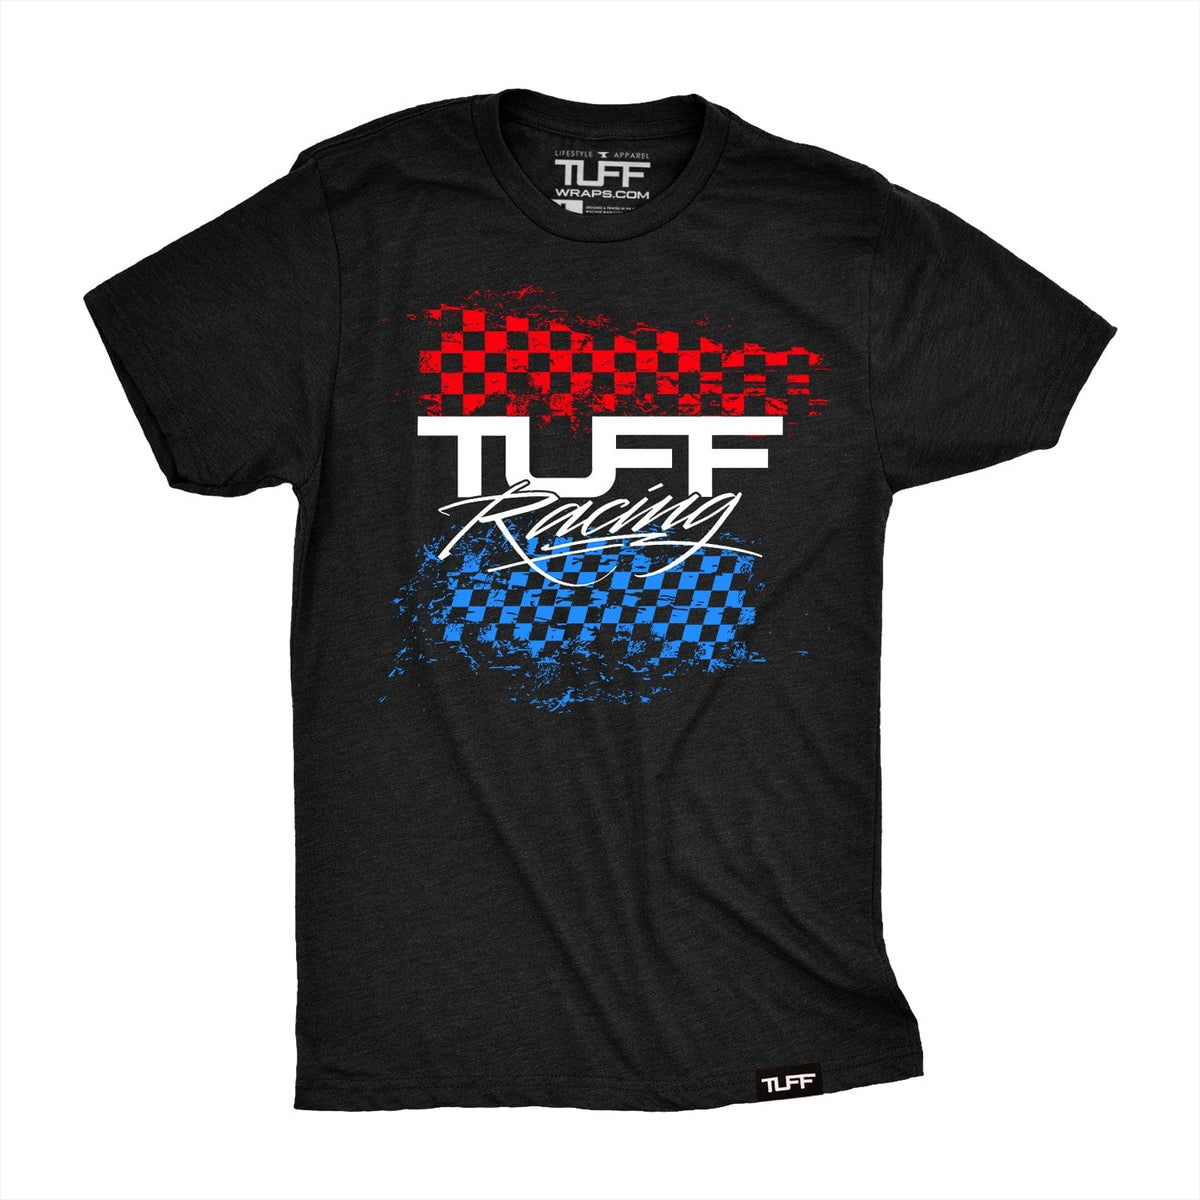 TUFF Racing Tee S / Black / 4 TuffWraps.com